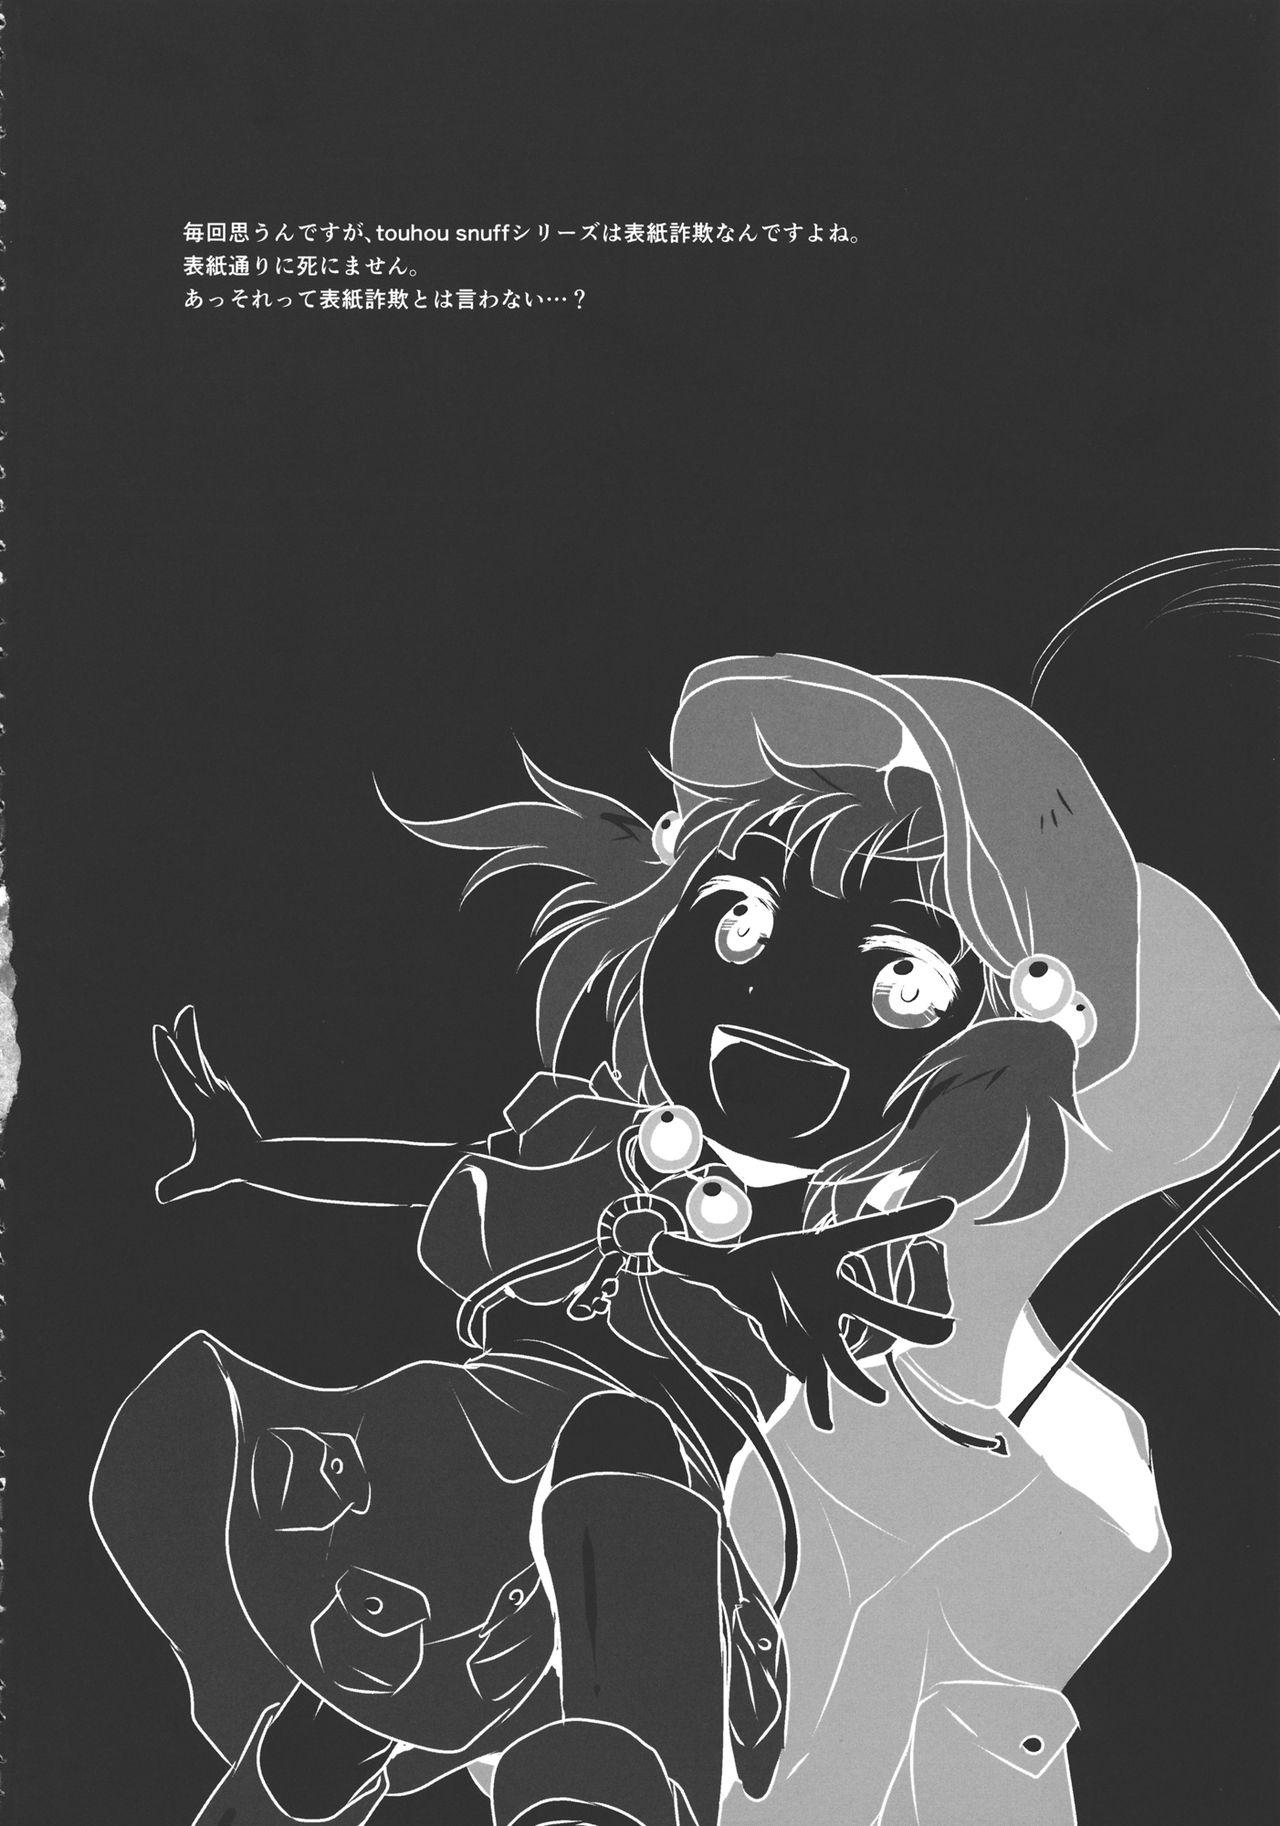 (Kouroumu 9) [02 (Harasaki)] (Kojin Satsuei)(Touhou)(Kouroumu 9)[02] Touhou snuff vol.3 Kawashiro Nitori (Mushuusei) (Loli-kei Youjo no Kirei na Hadaka wo Suki Houdai shichai mashita!).avi (Touhou Project) [布洛基个人汉化] 4